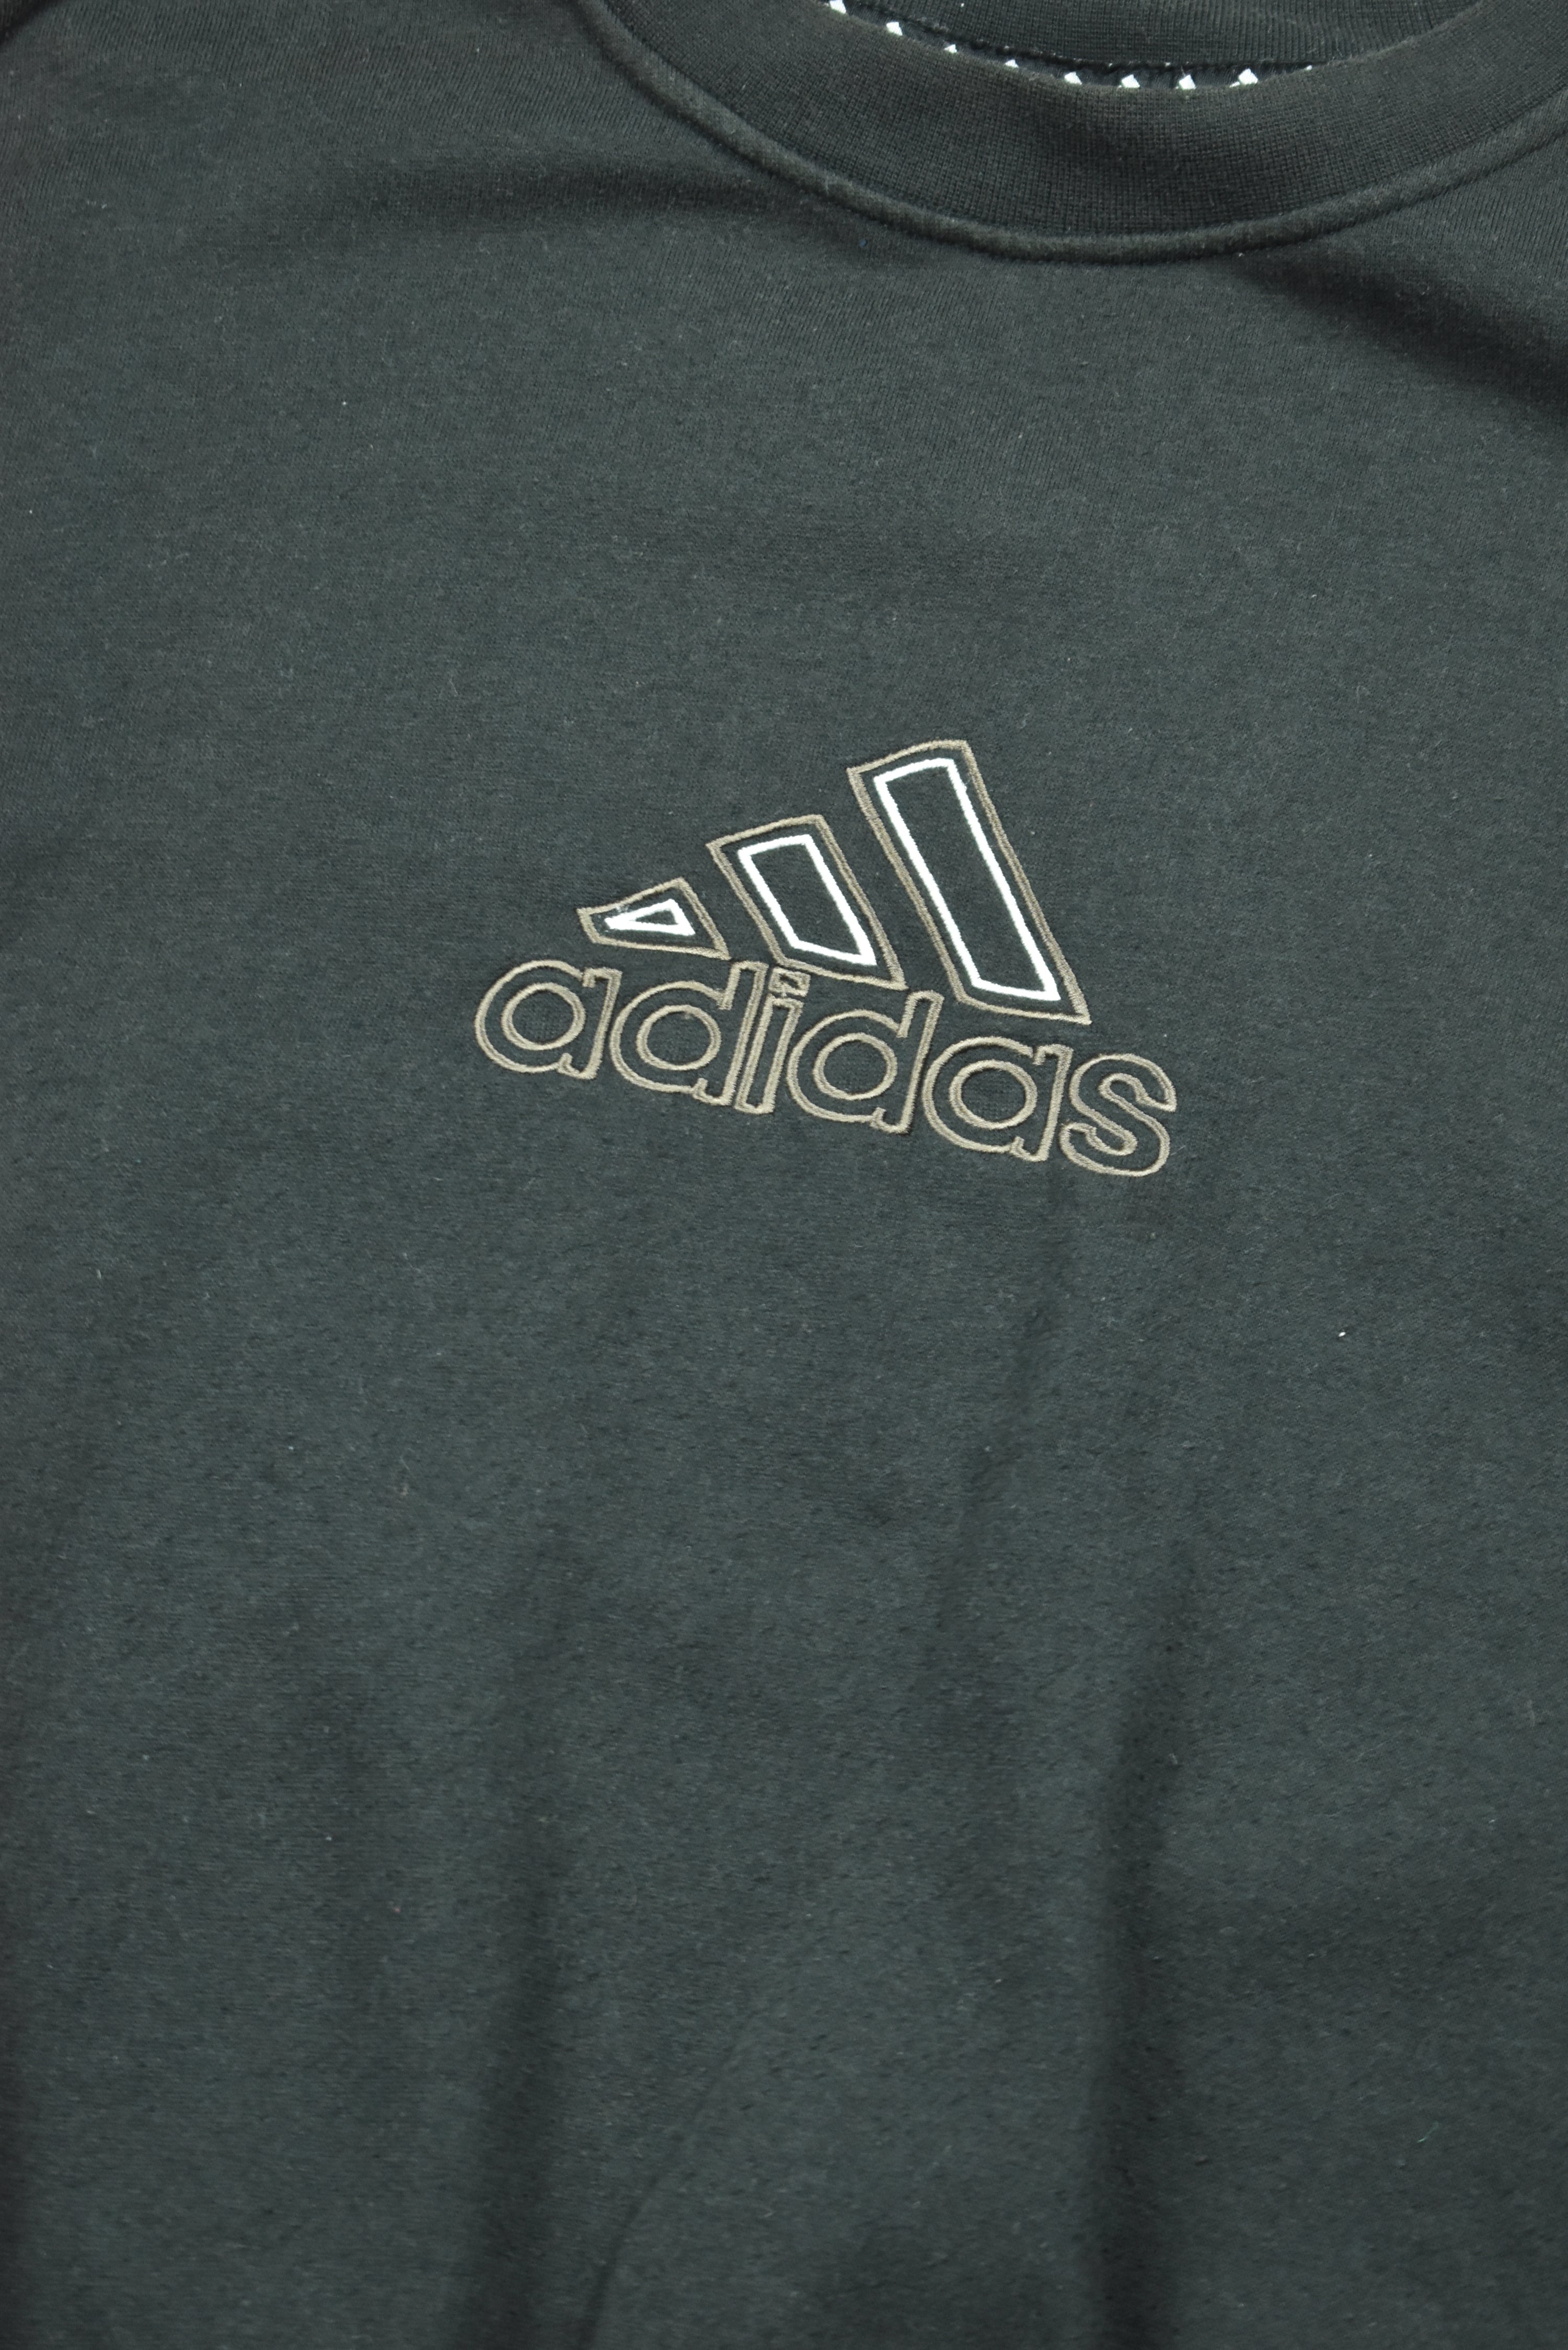 Vintage Adidas Embroidery Logo Sweatshirt Medium